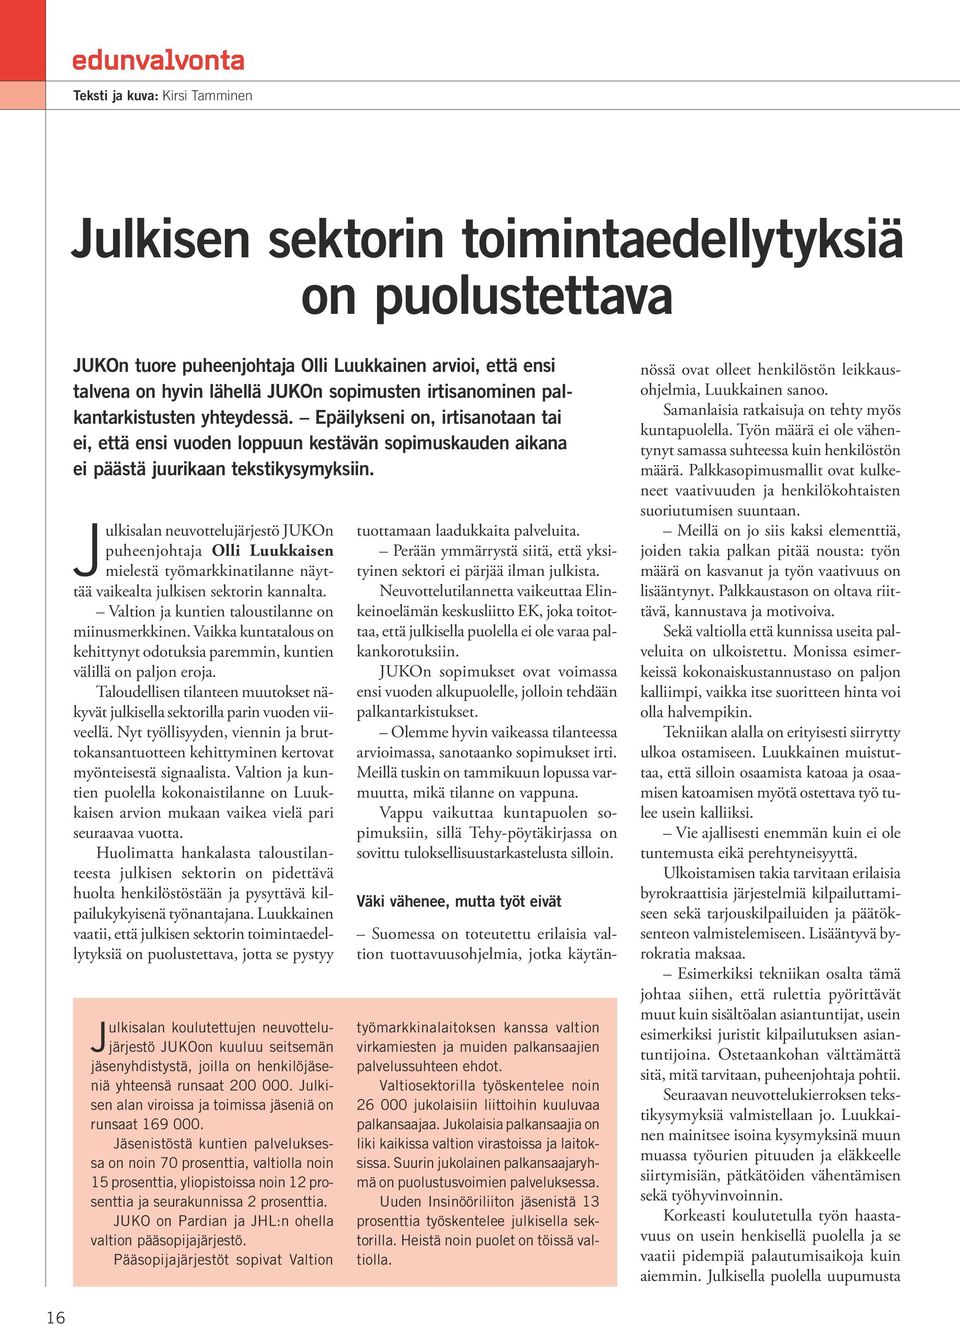 Julkisalan neuvottelujärjestö JUKOn puheenjohtaja Olli Luukkaisen mielestä työmarkkinatilanne näyttää vaikealta julkisen sektorin kannalta. Valtion ja kuntien taloustilanne on miinusmerkkinen.